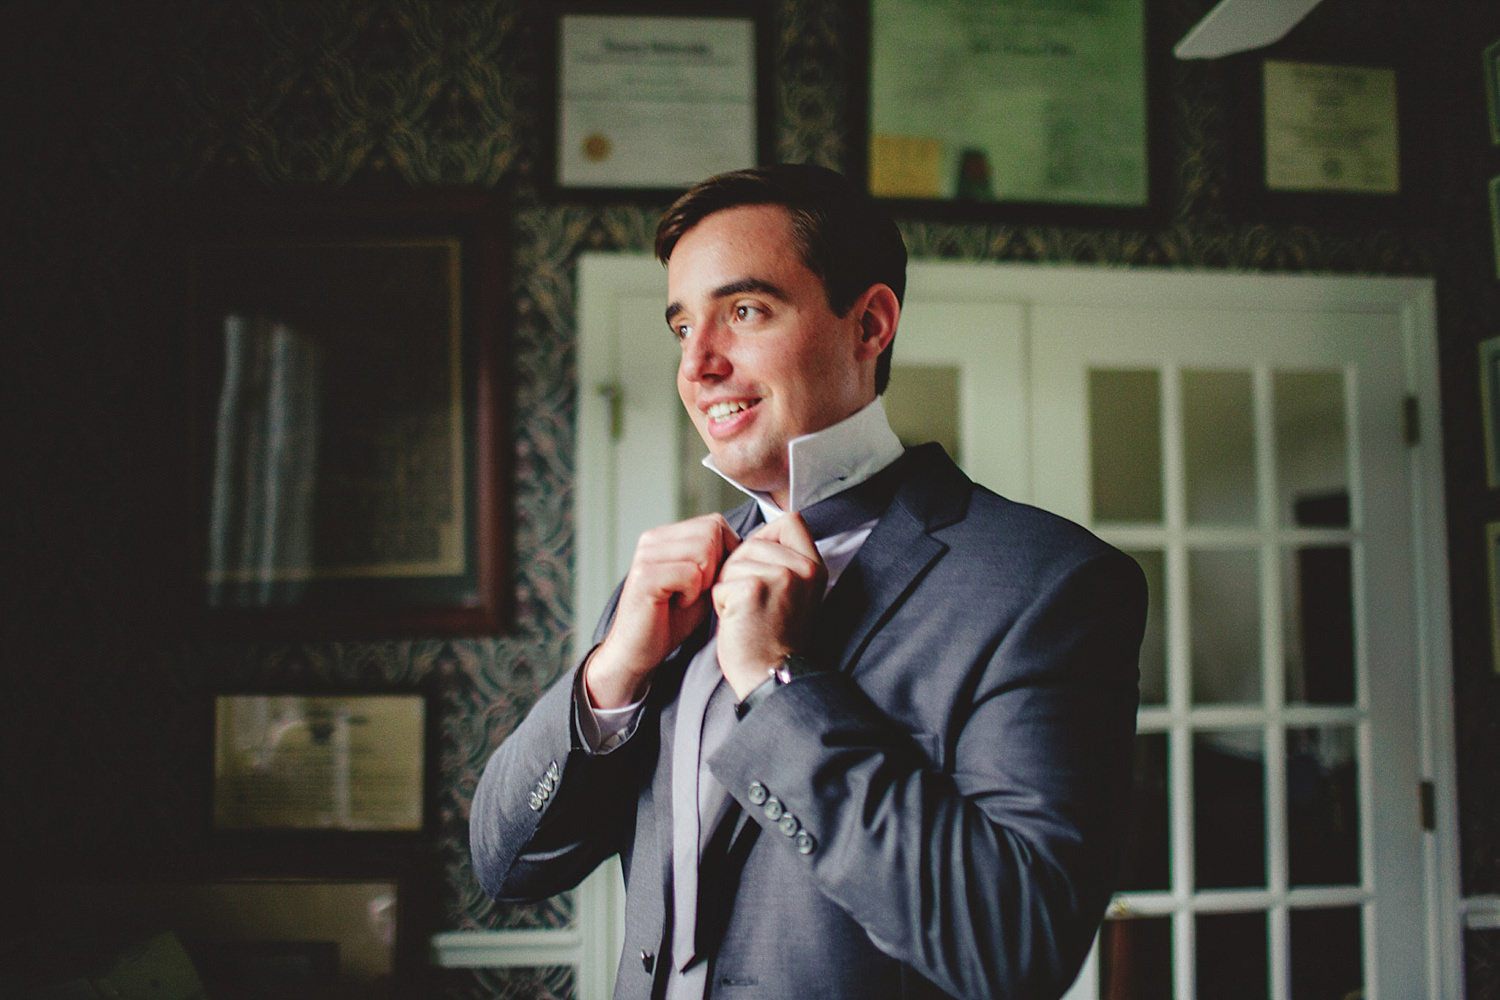 knowles memorial chapel wedding: groom tying tie